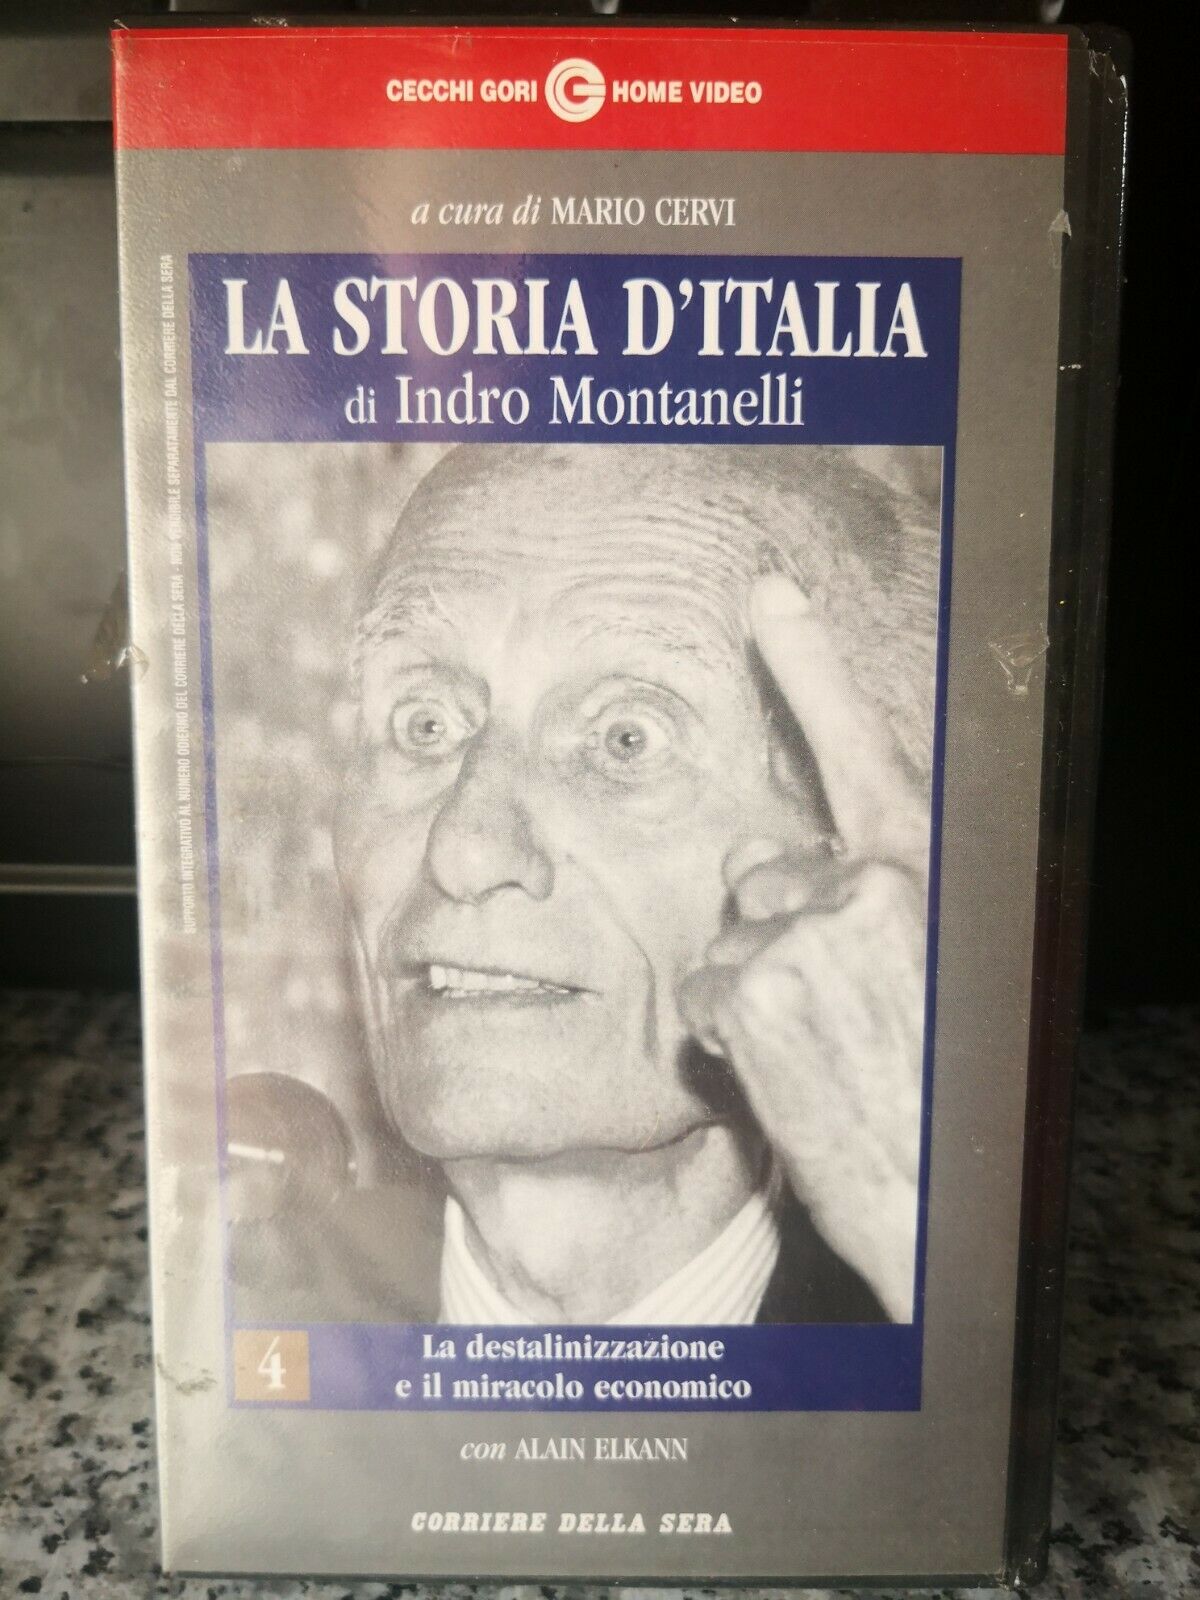 La storia d'Italia di Indro Montanelli - 3  vhs- 1999 - corriere della sera -F